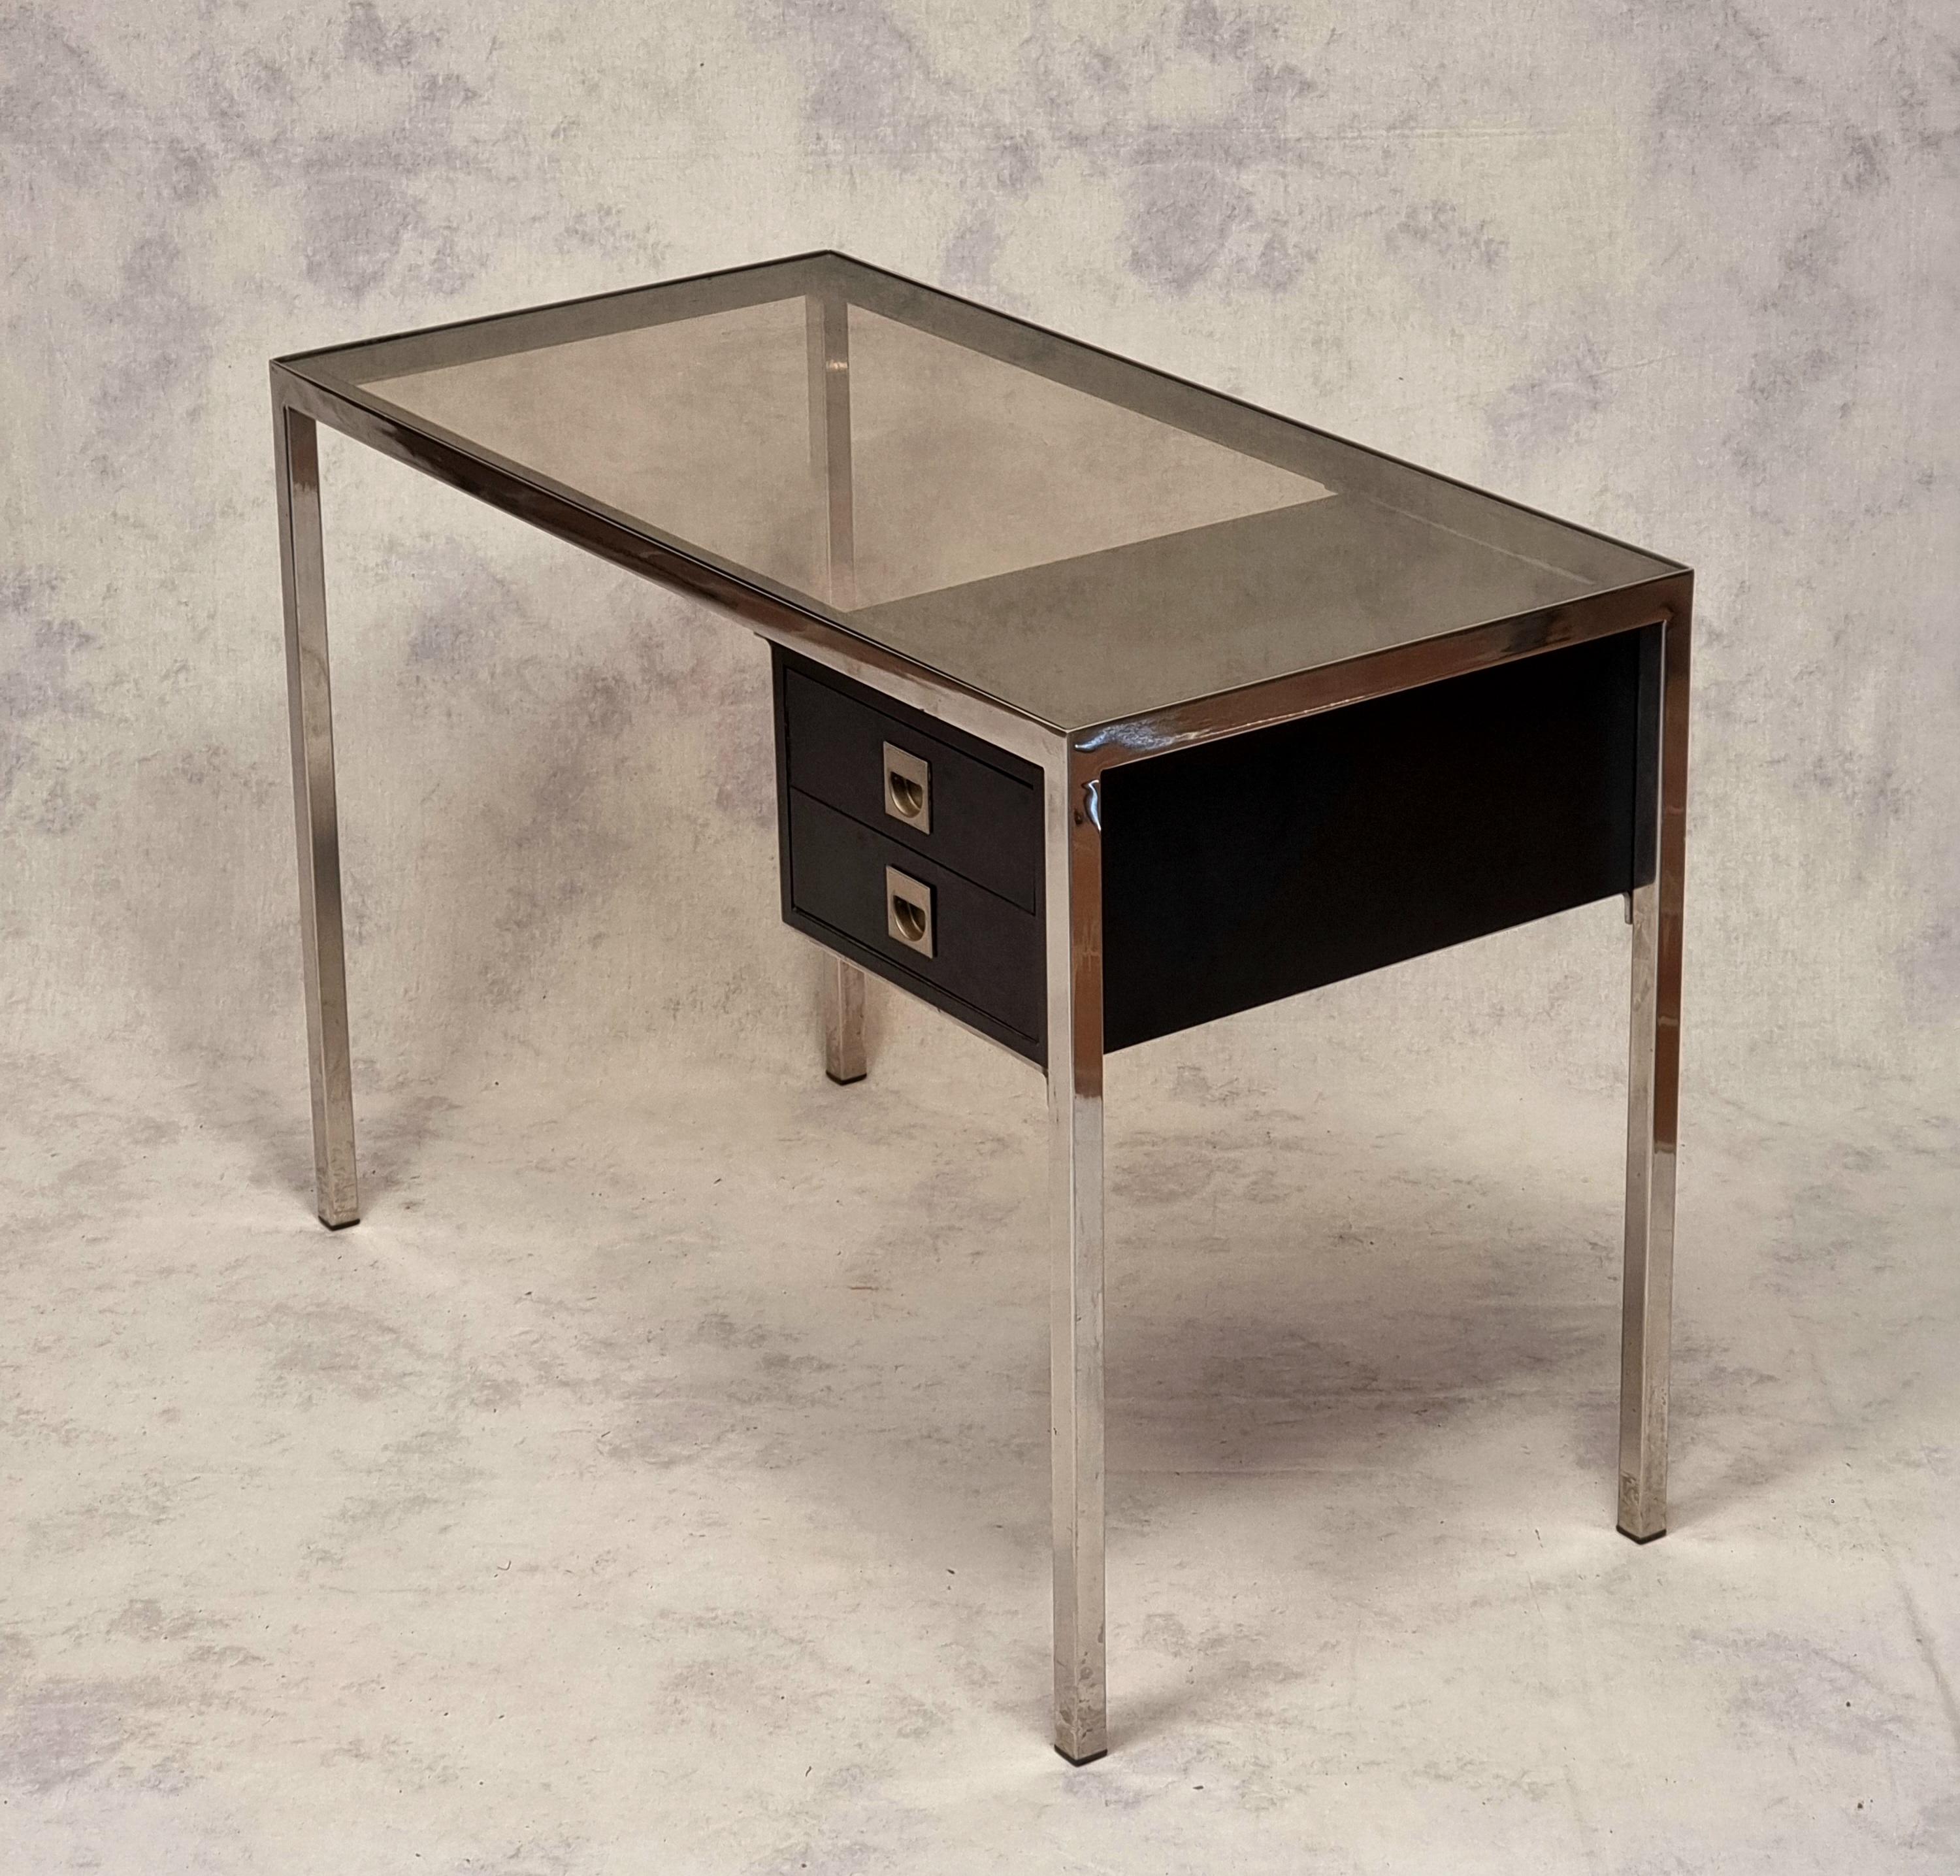 Eleganter Schreibtisch von Guy Lefèvre aus den 1970er Jahren. Die verchromte Metallstruktur und die schwarz lackierte Holzbox sind typisch für den französischen Stil der 1970er Jahre. Genau wie Maison Jansen, Romeo oder Jean Claude Mahey ist Guy